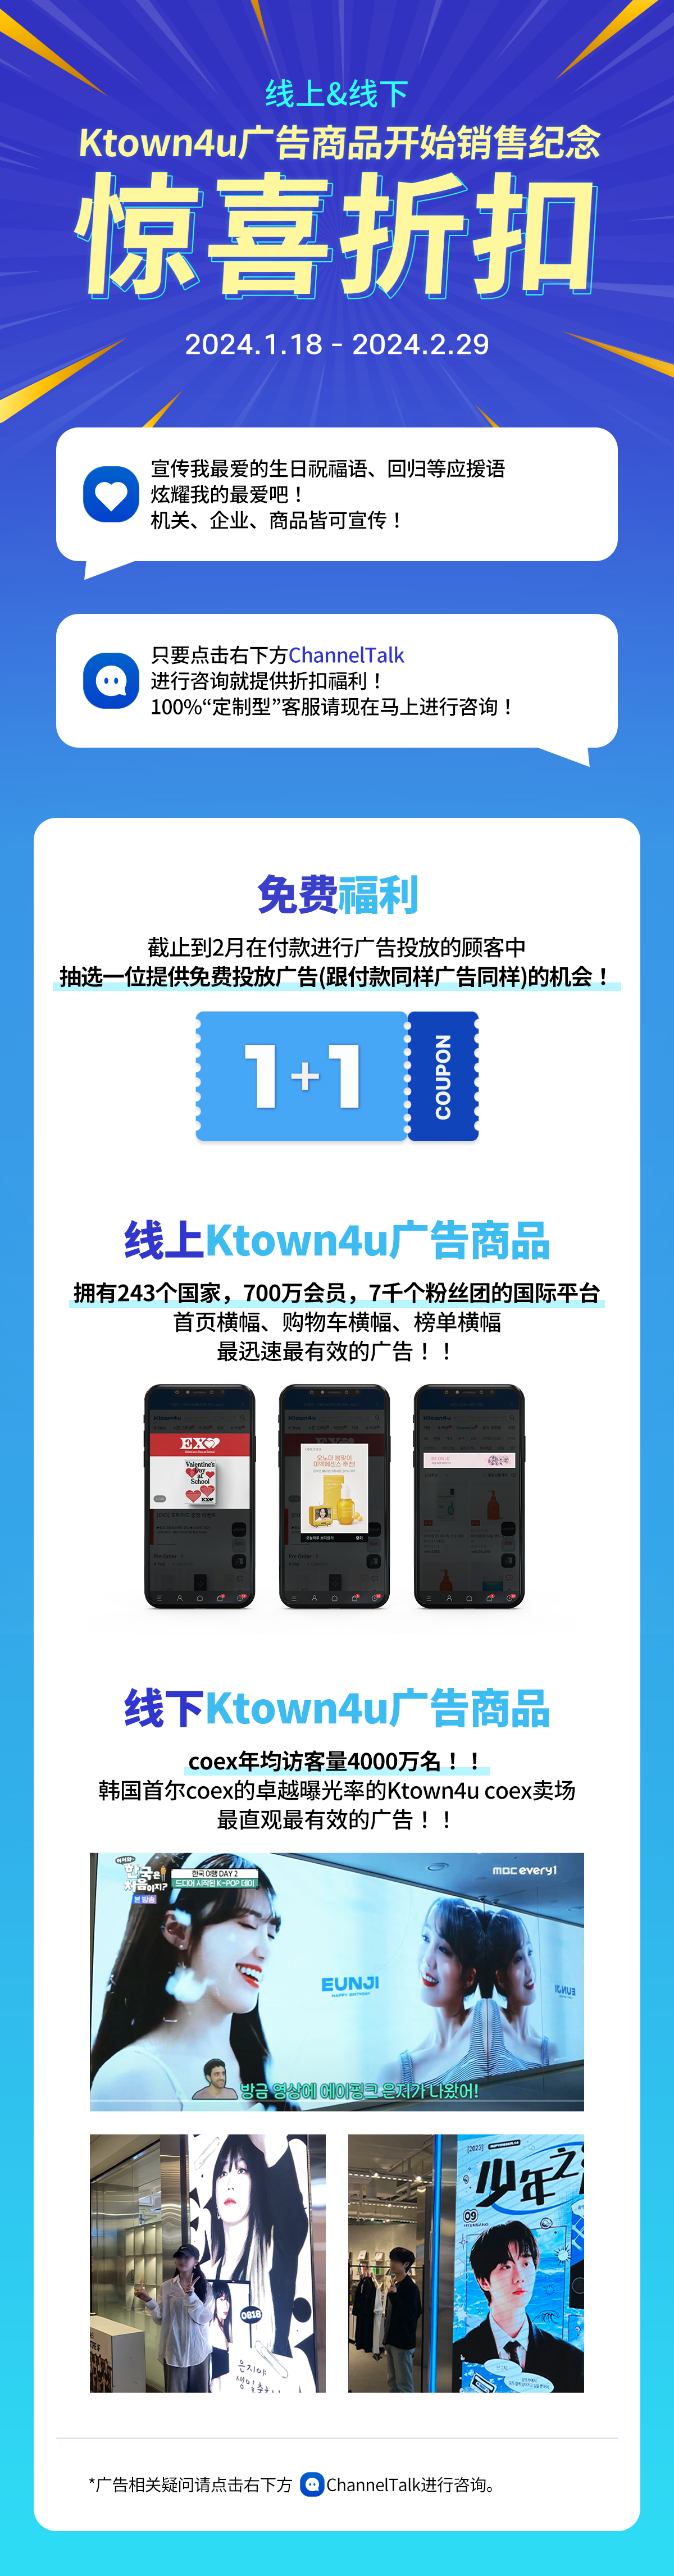 Ktown4u广告商品